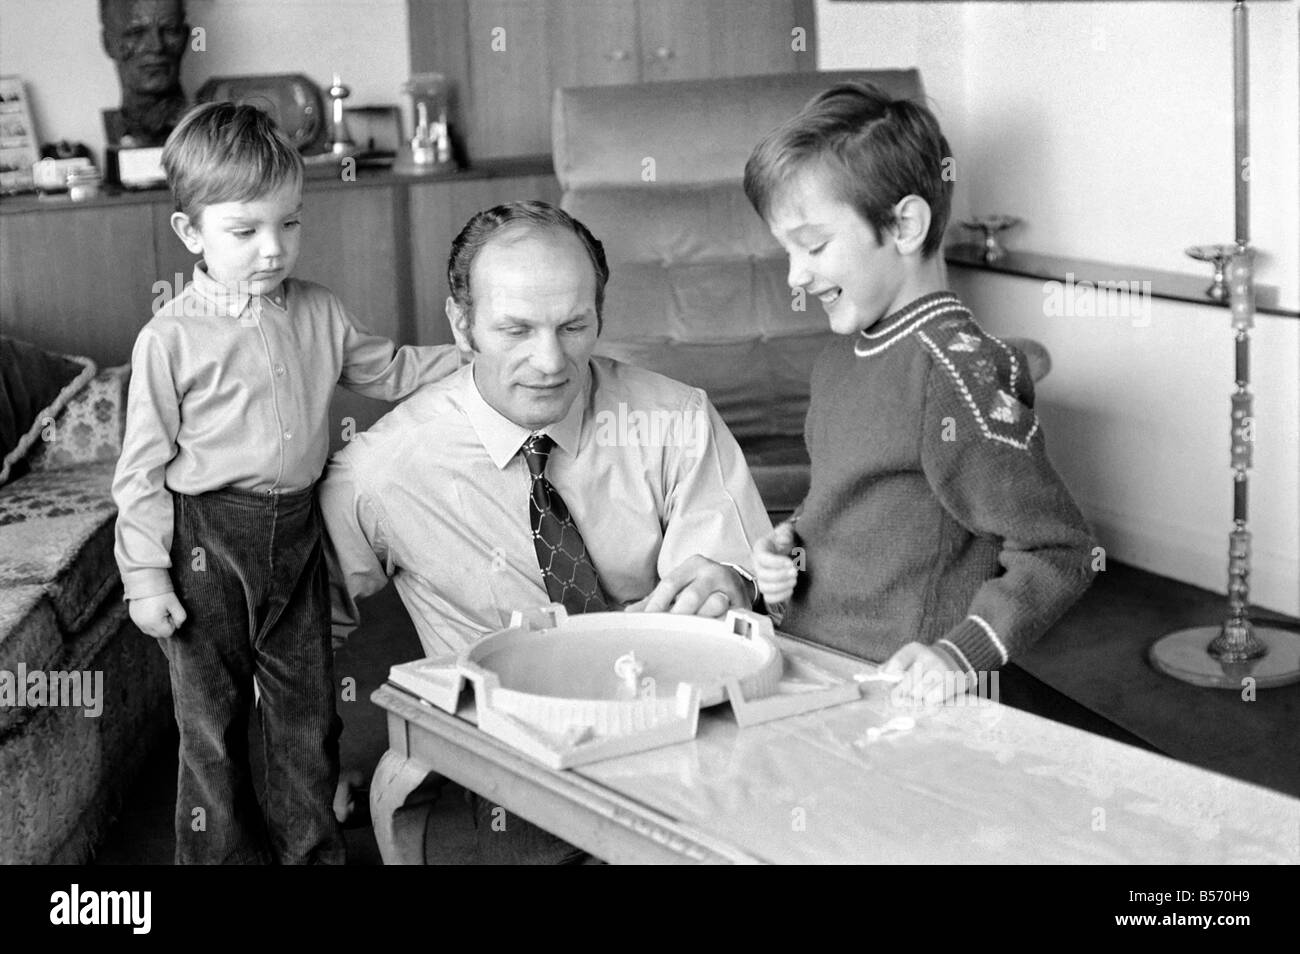 Le boxeur britannique Henry Cooper photographiée avec fils Henry Marco âgés de 10 (à droite) et 3 ans John Pietro jouant avec un jeu de toupies à Wembley son accueil. Décembre 1970 ;70-11690-002 Banque D'Images